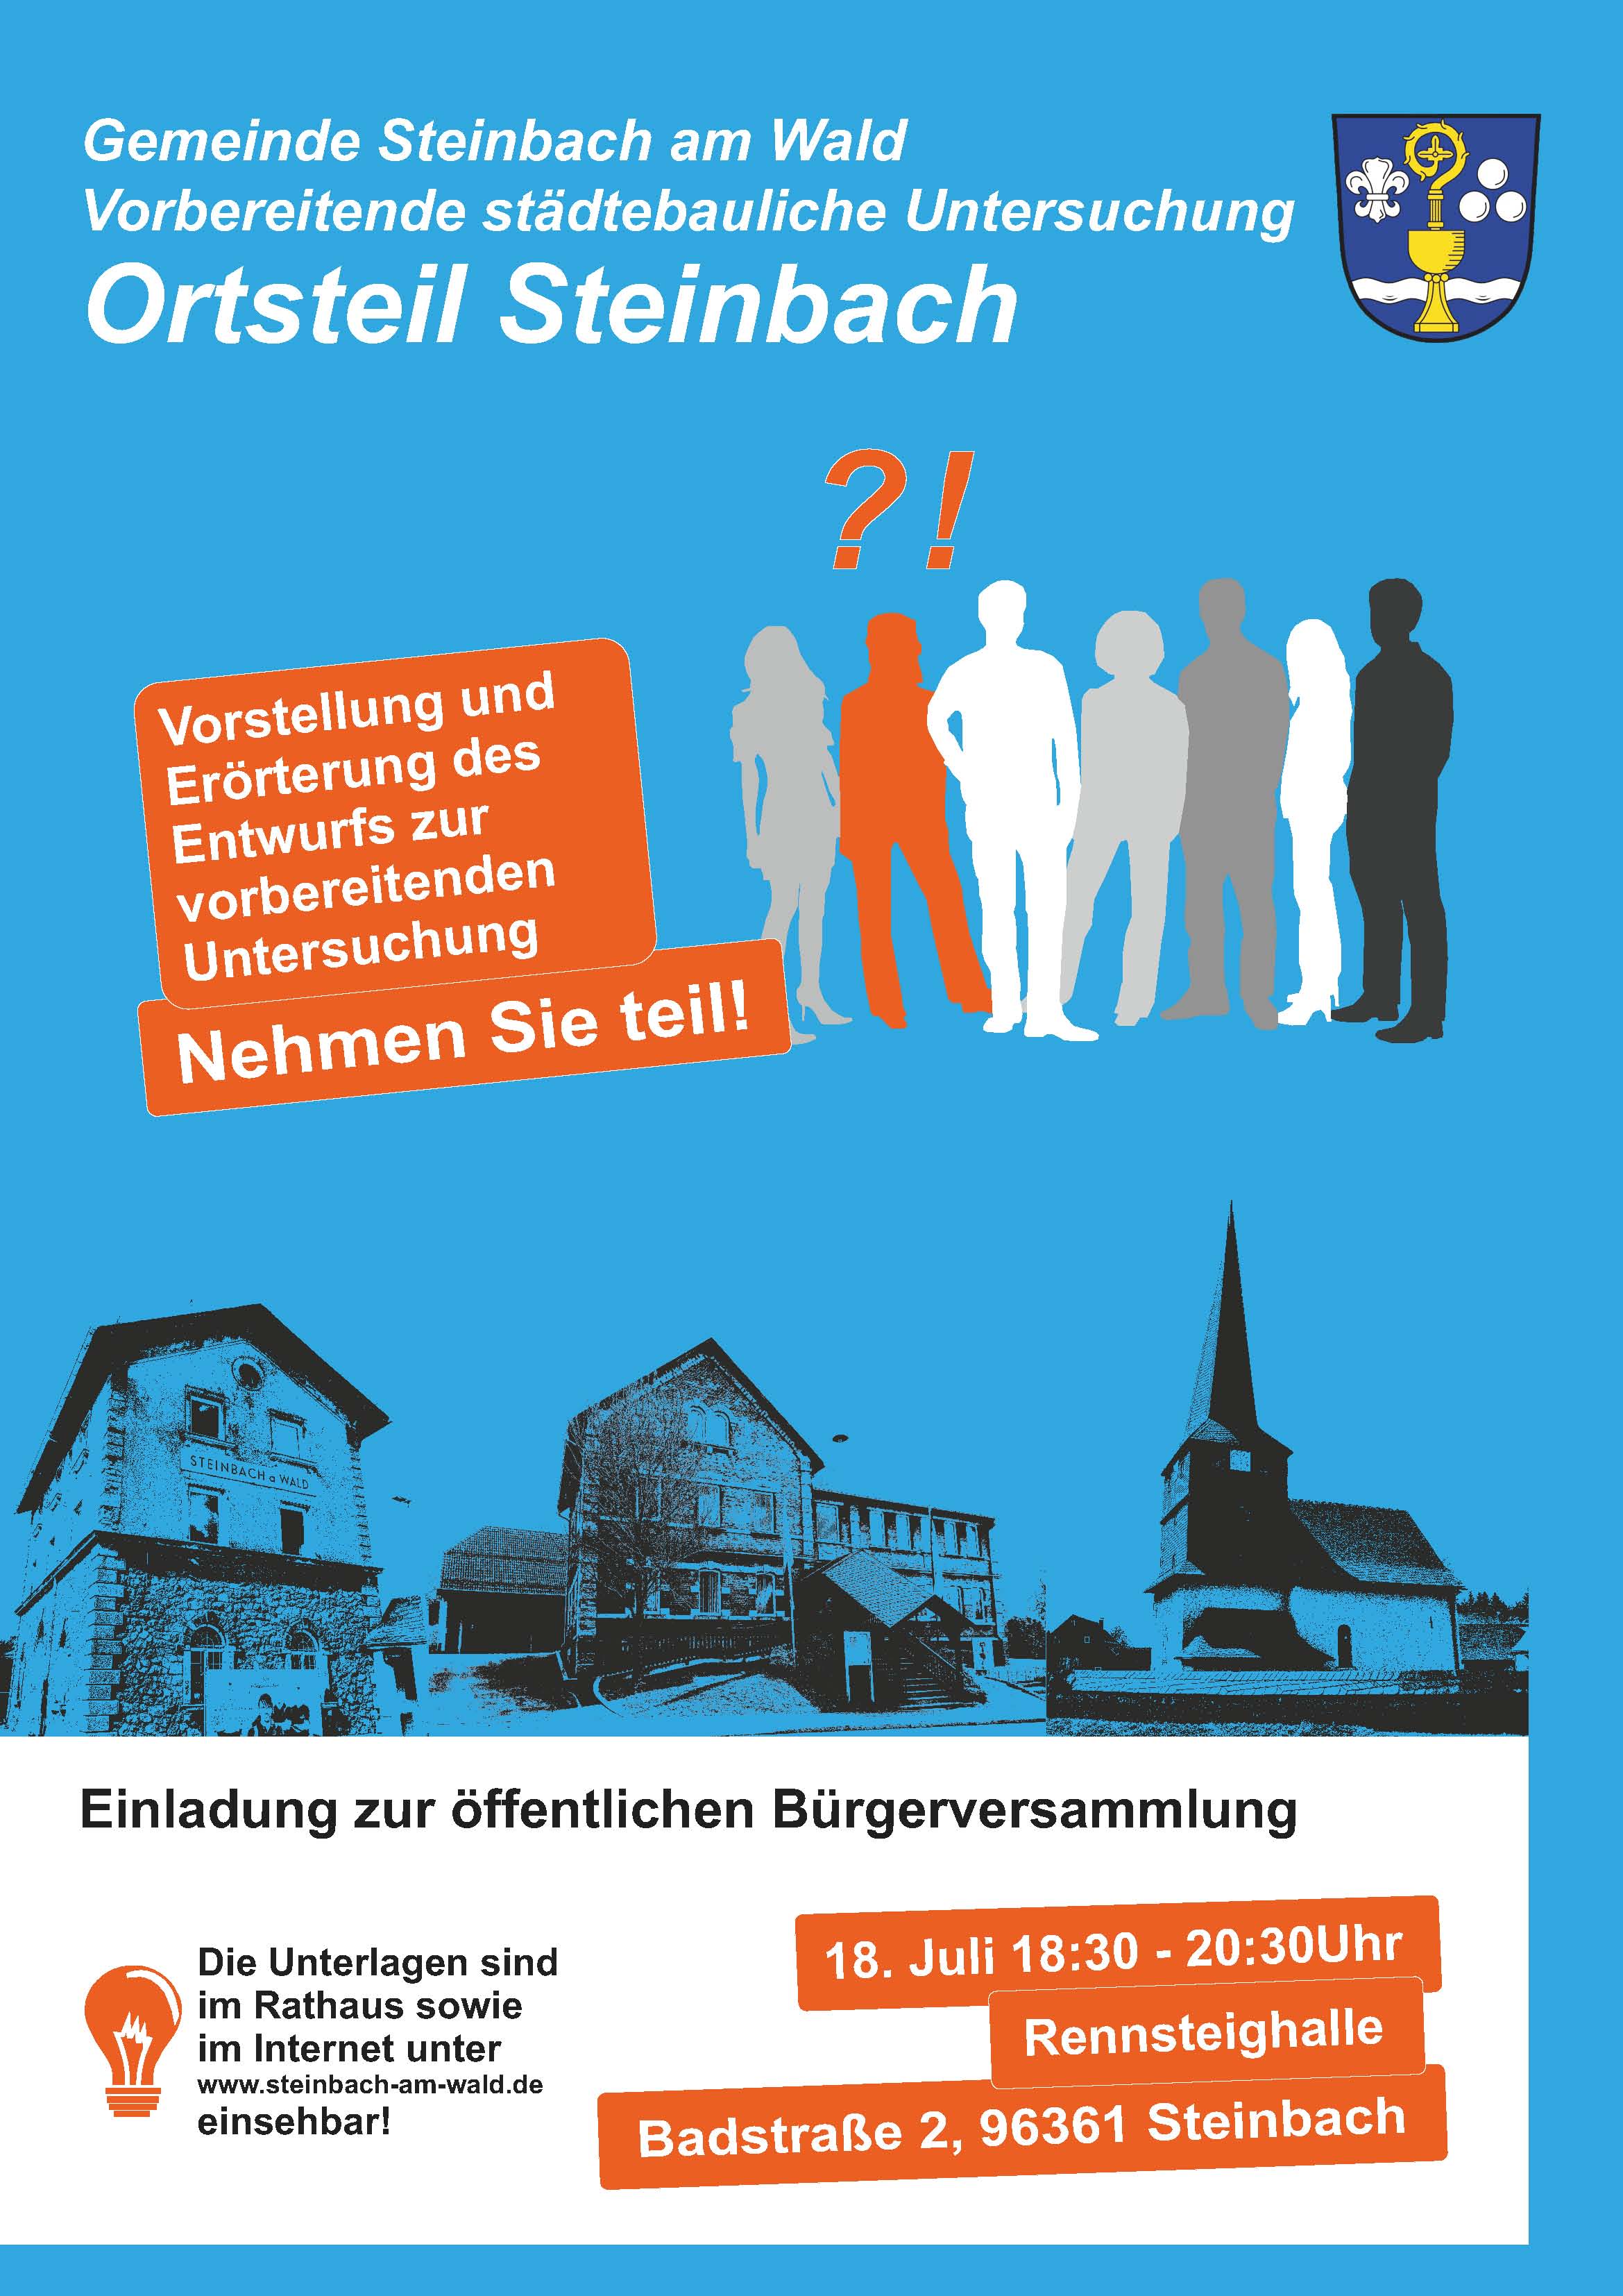 Städtebauförderung im Gemeindeteil Steinbach; Einladung zur Vorstellung und Erörterung des Entwurfs zur vorbereitenden Untersuchung